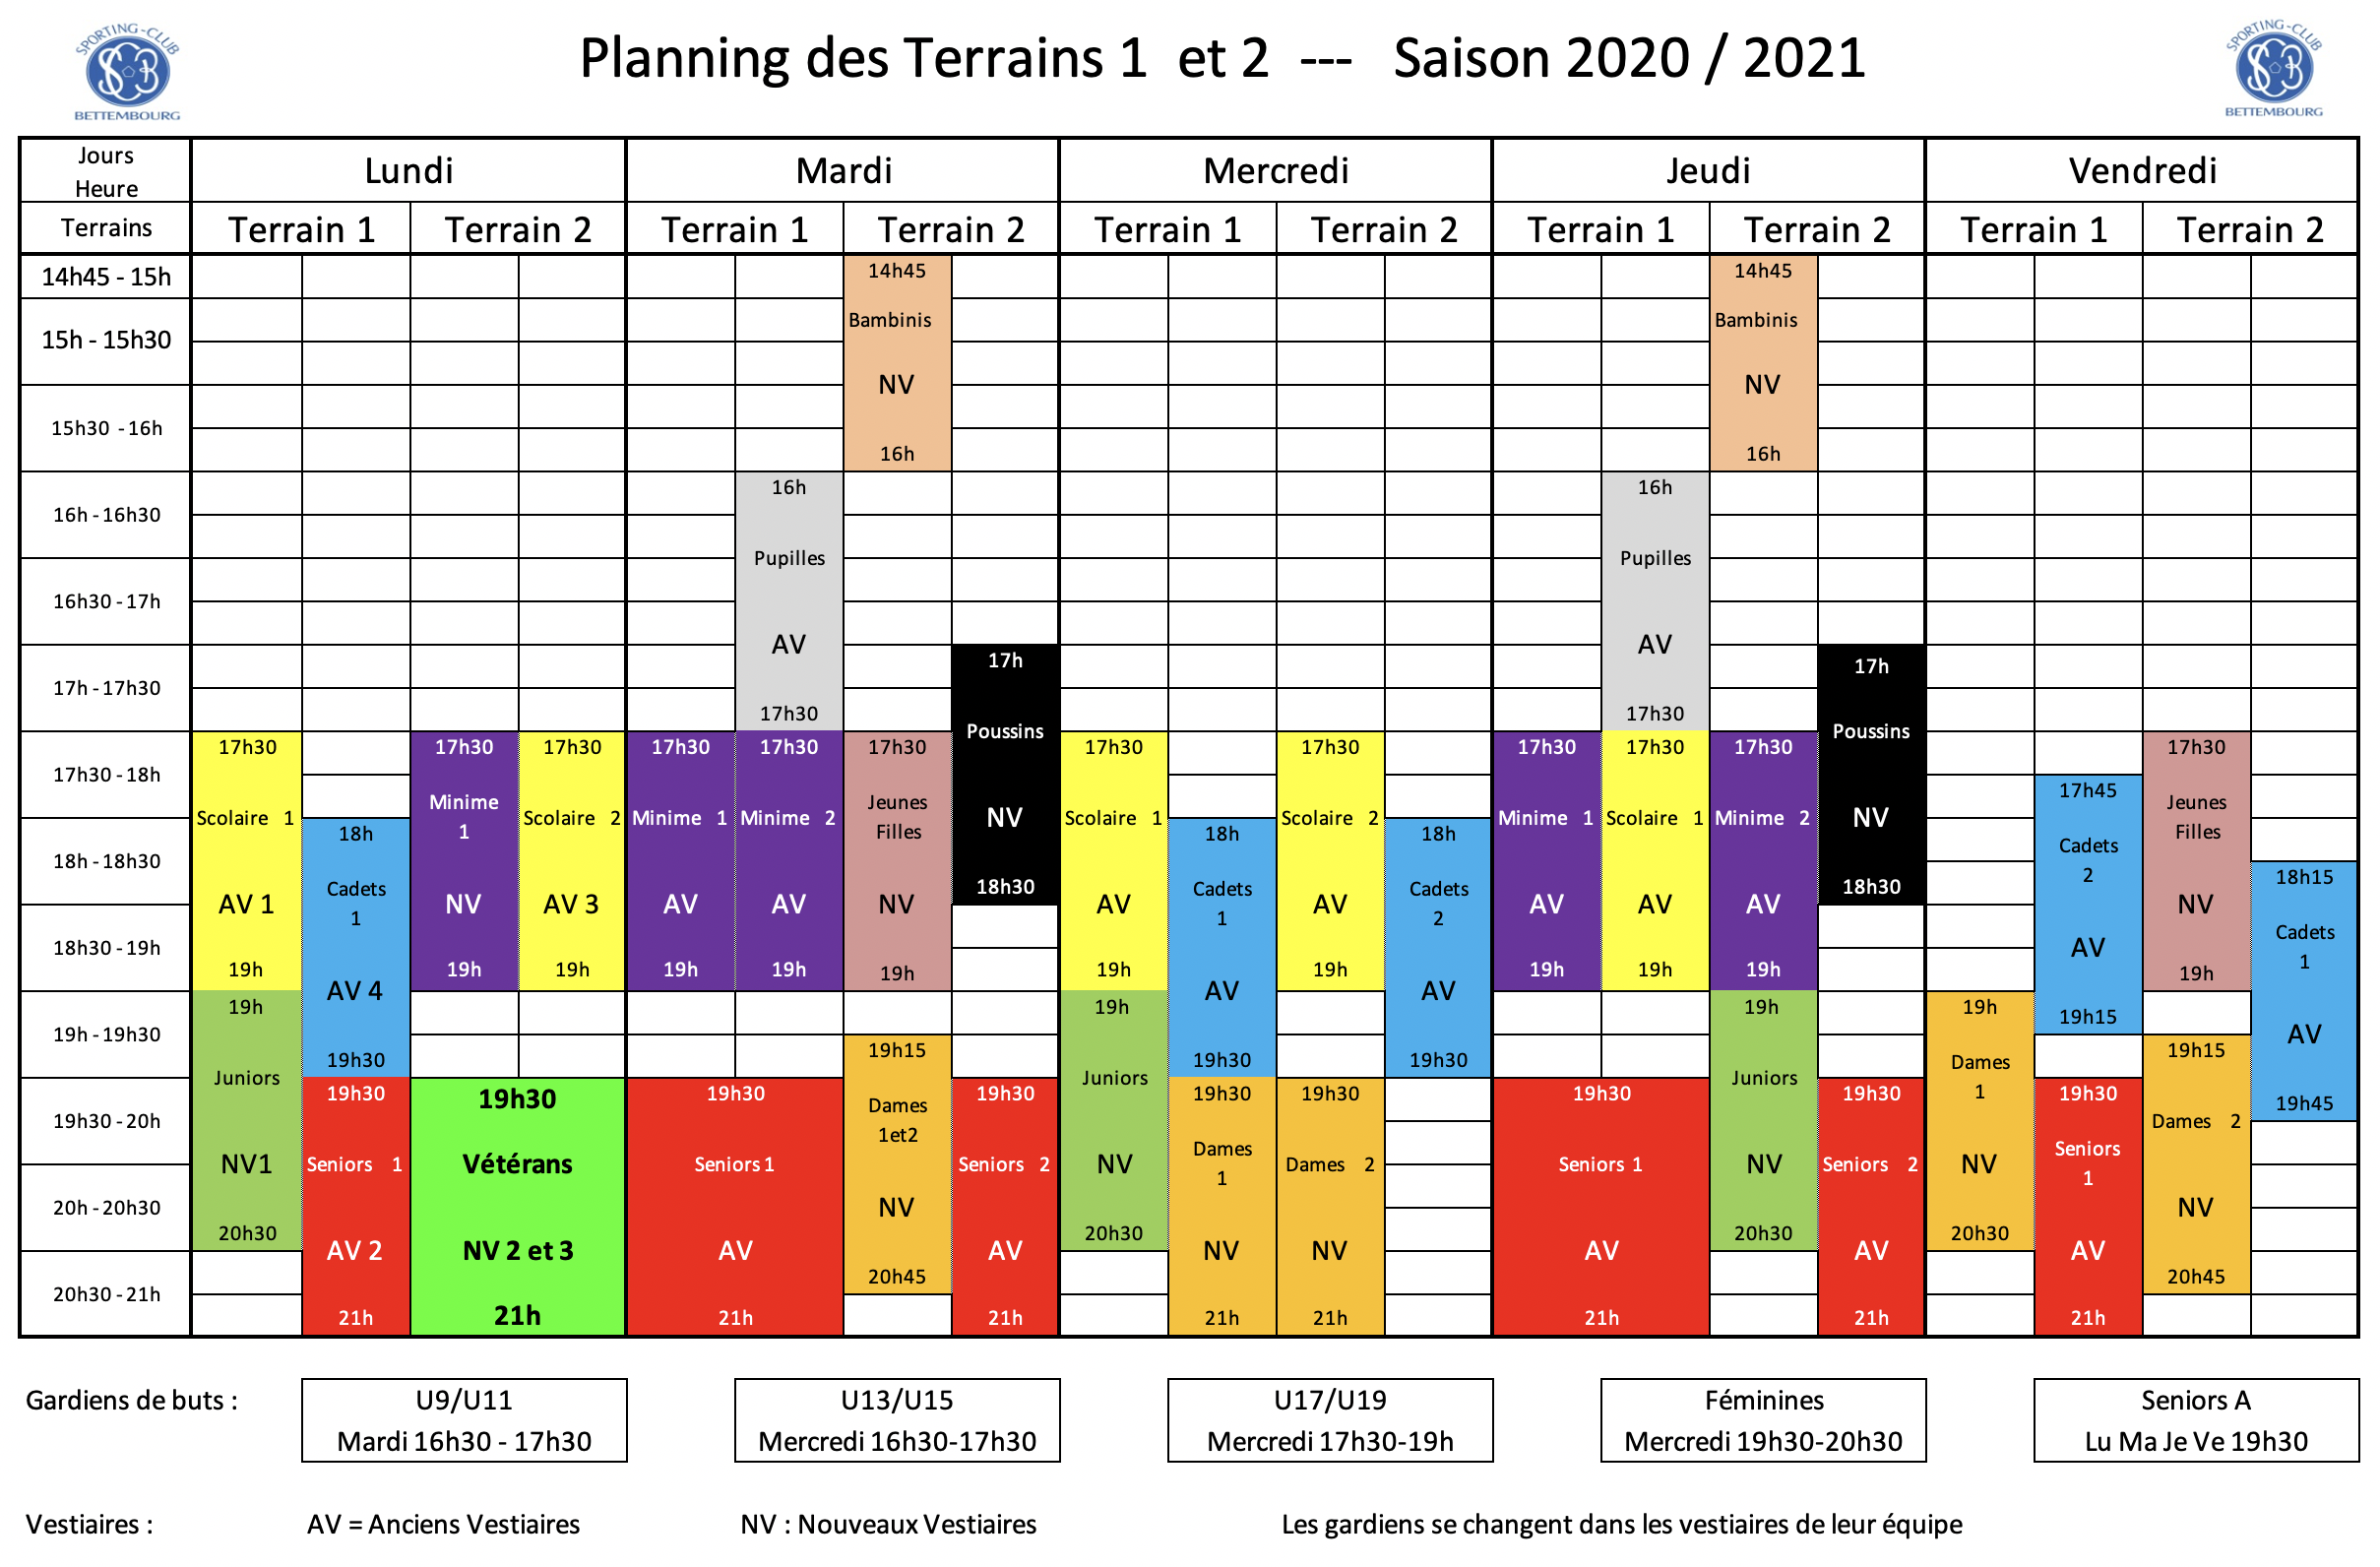 Planning des Entraînements 2020/2021